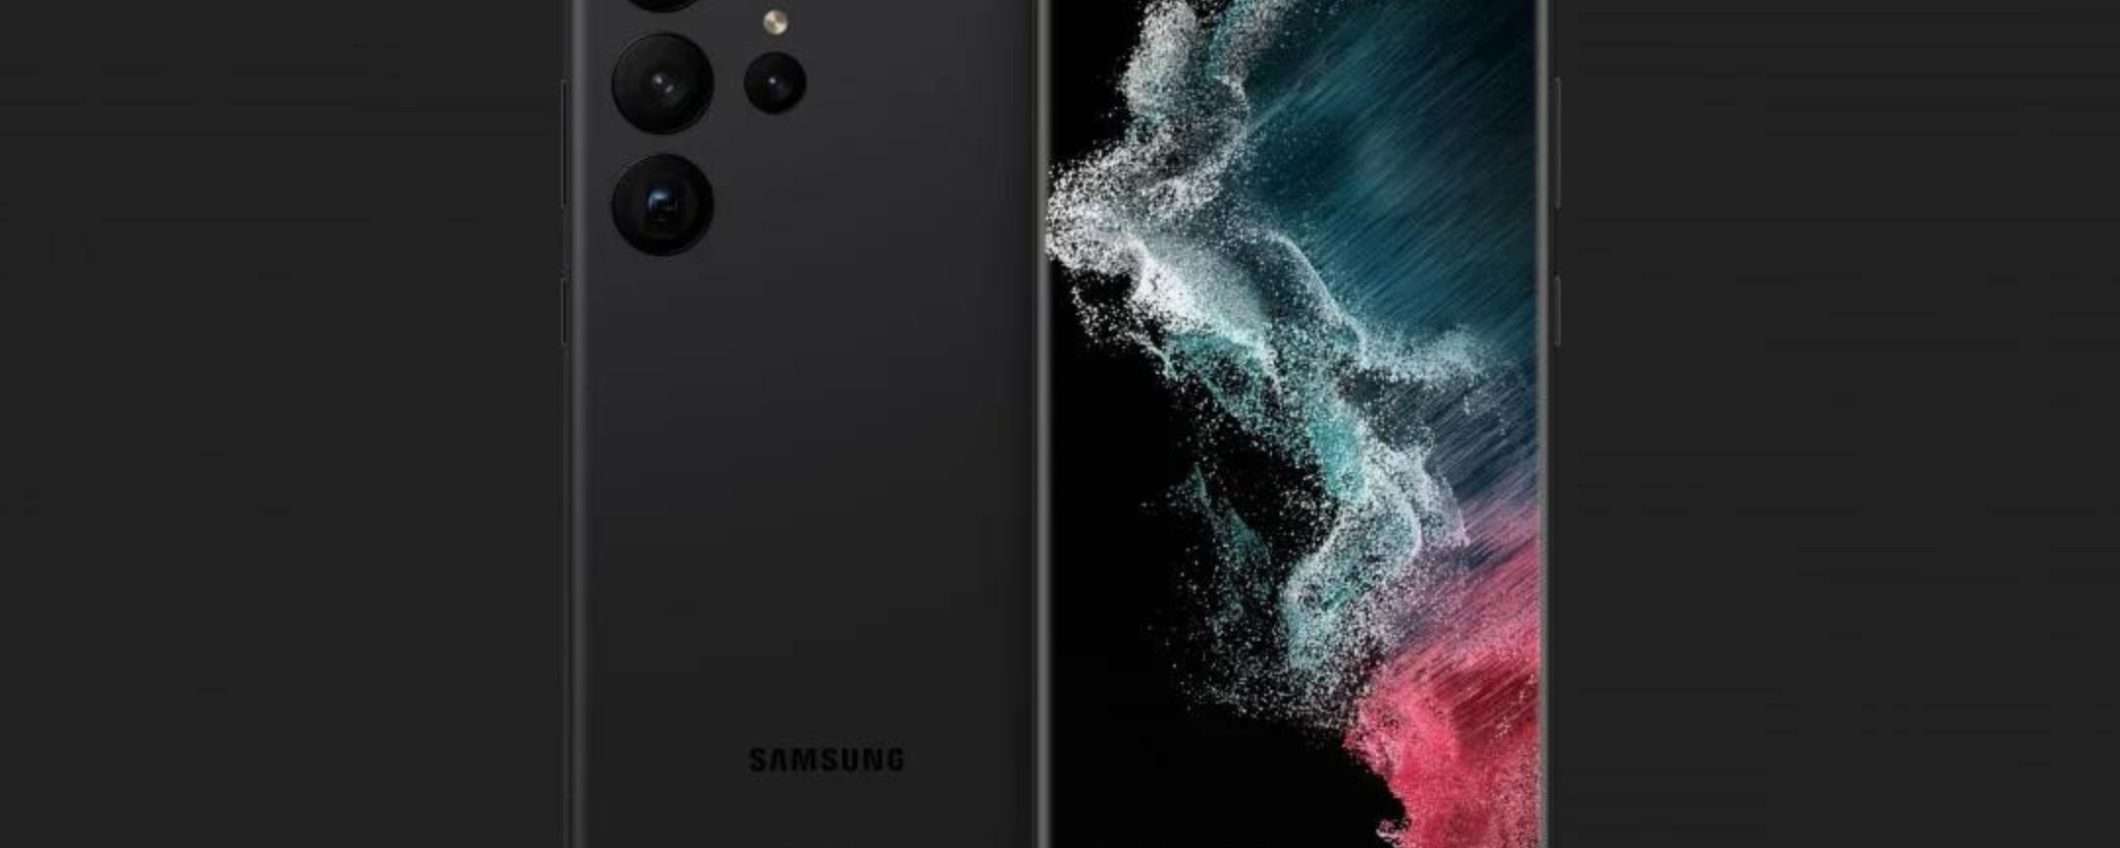 Samsung Galaxy S23: la serie verrà presentata il 1° febbraio (RUMOR)